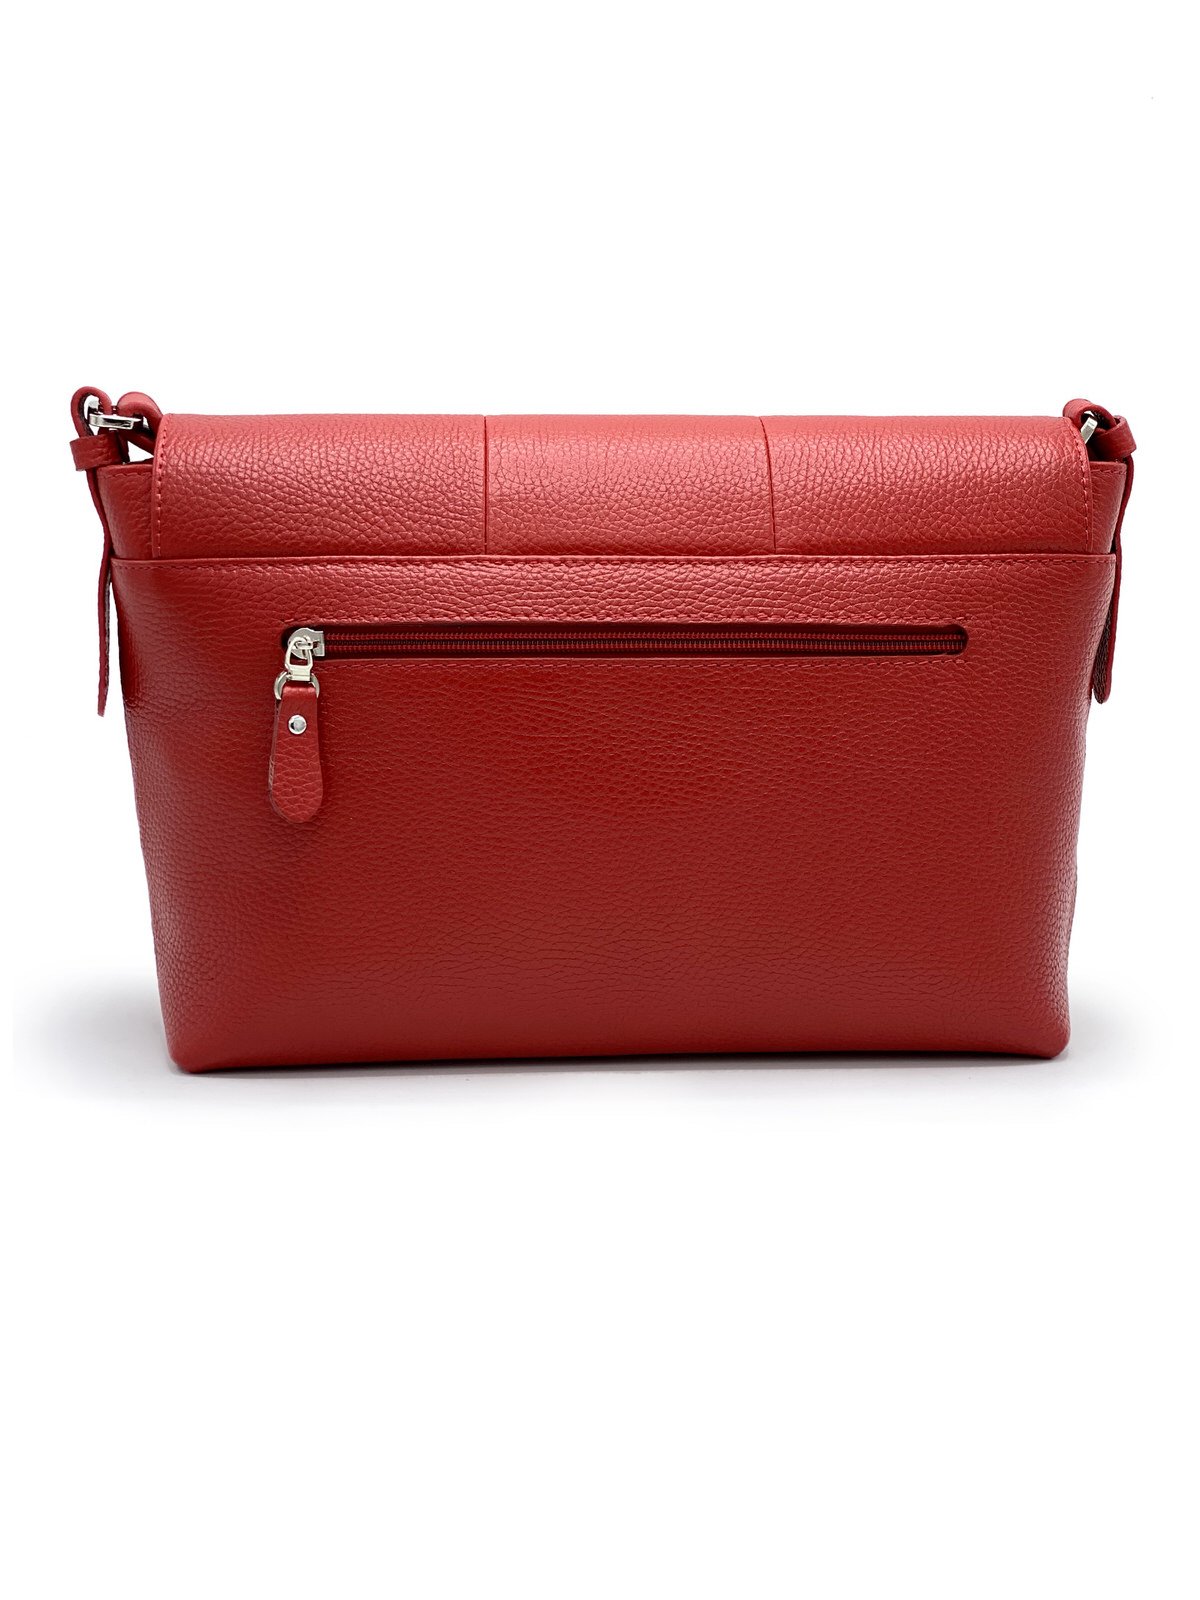 کیف زنانه چرم گاوی599 , قرمز فلوتر